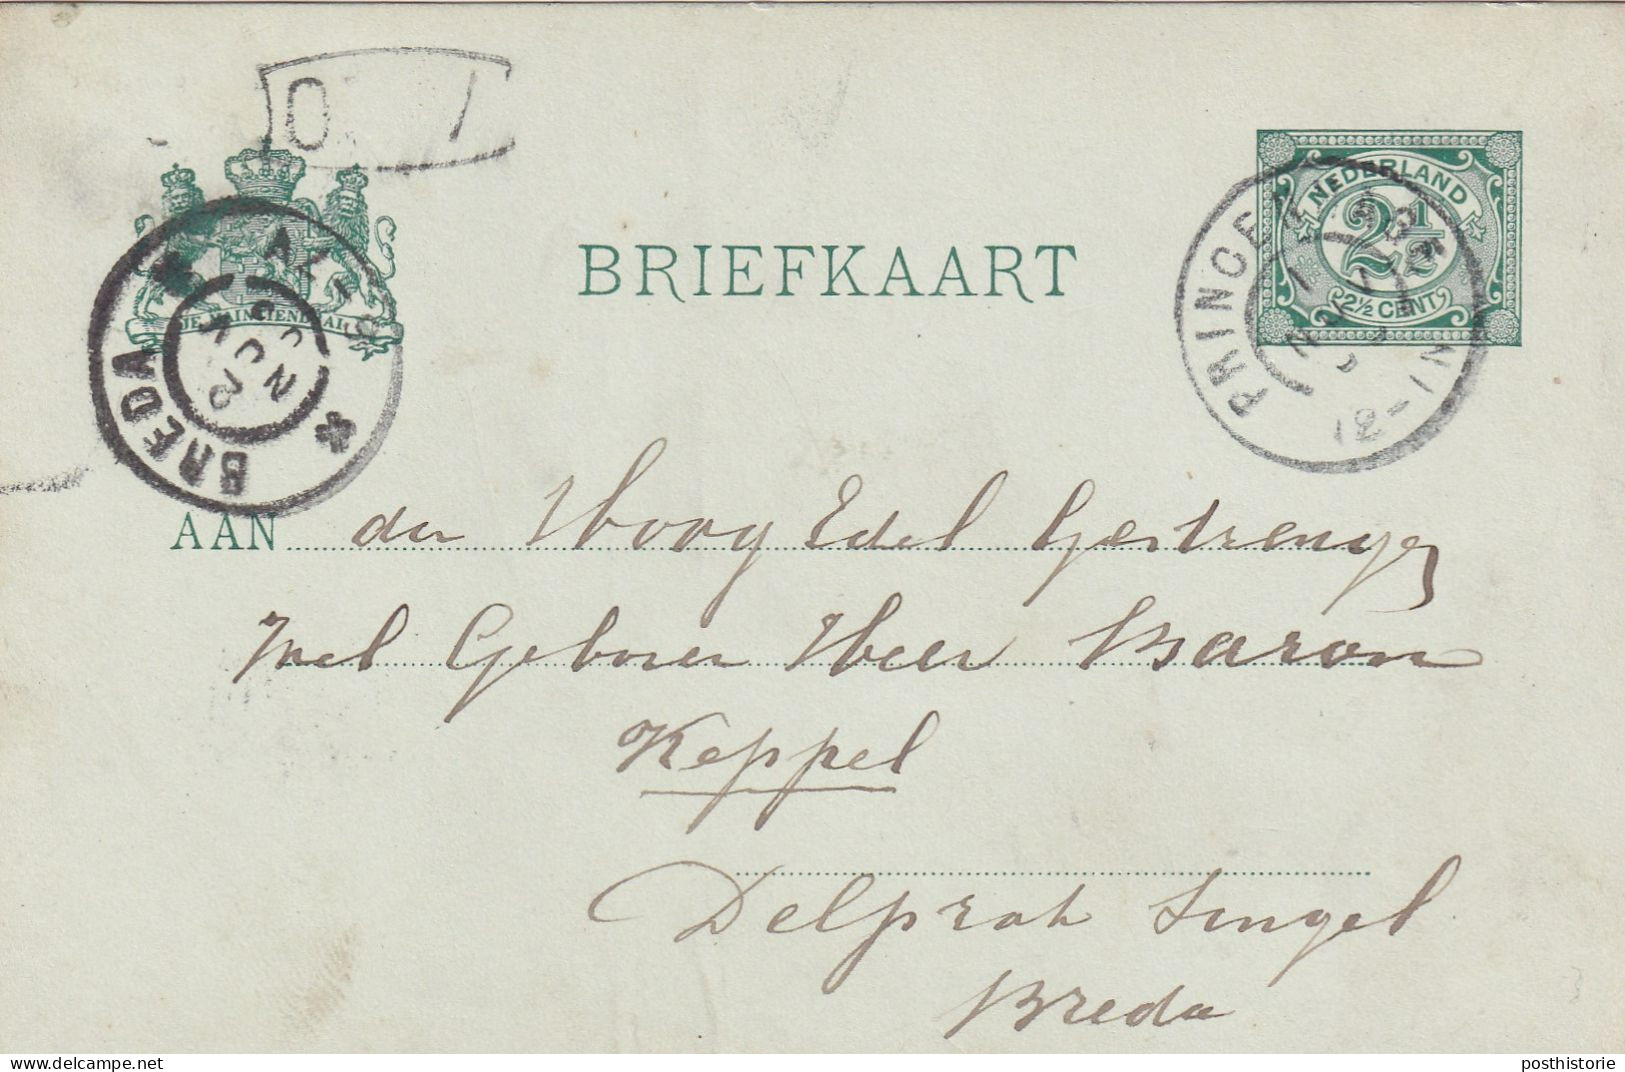 Briefkaart 1 Nov 1903 Princenhage (postkantoor Gorootrond) Naar Breda (grootrond) - Poststempels/ Marcofilie